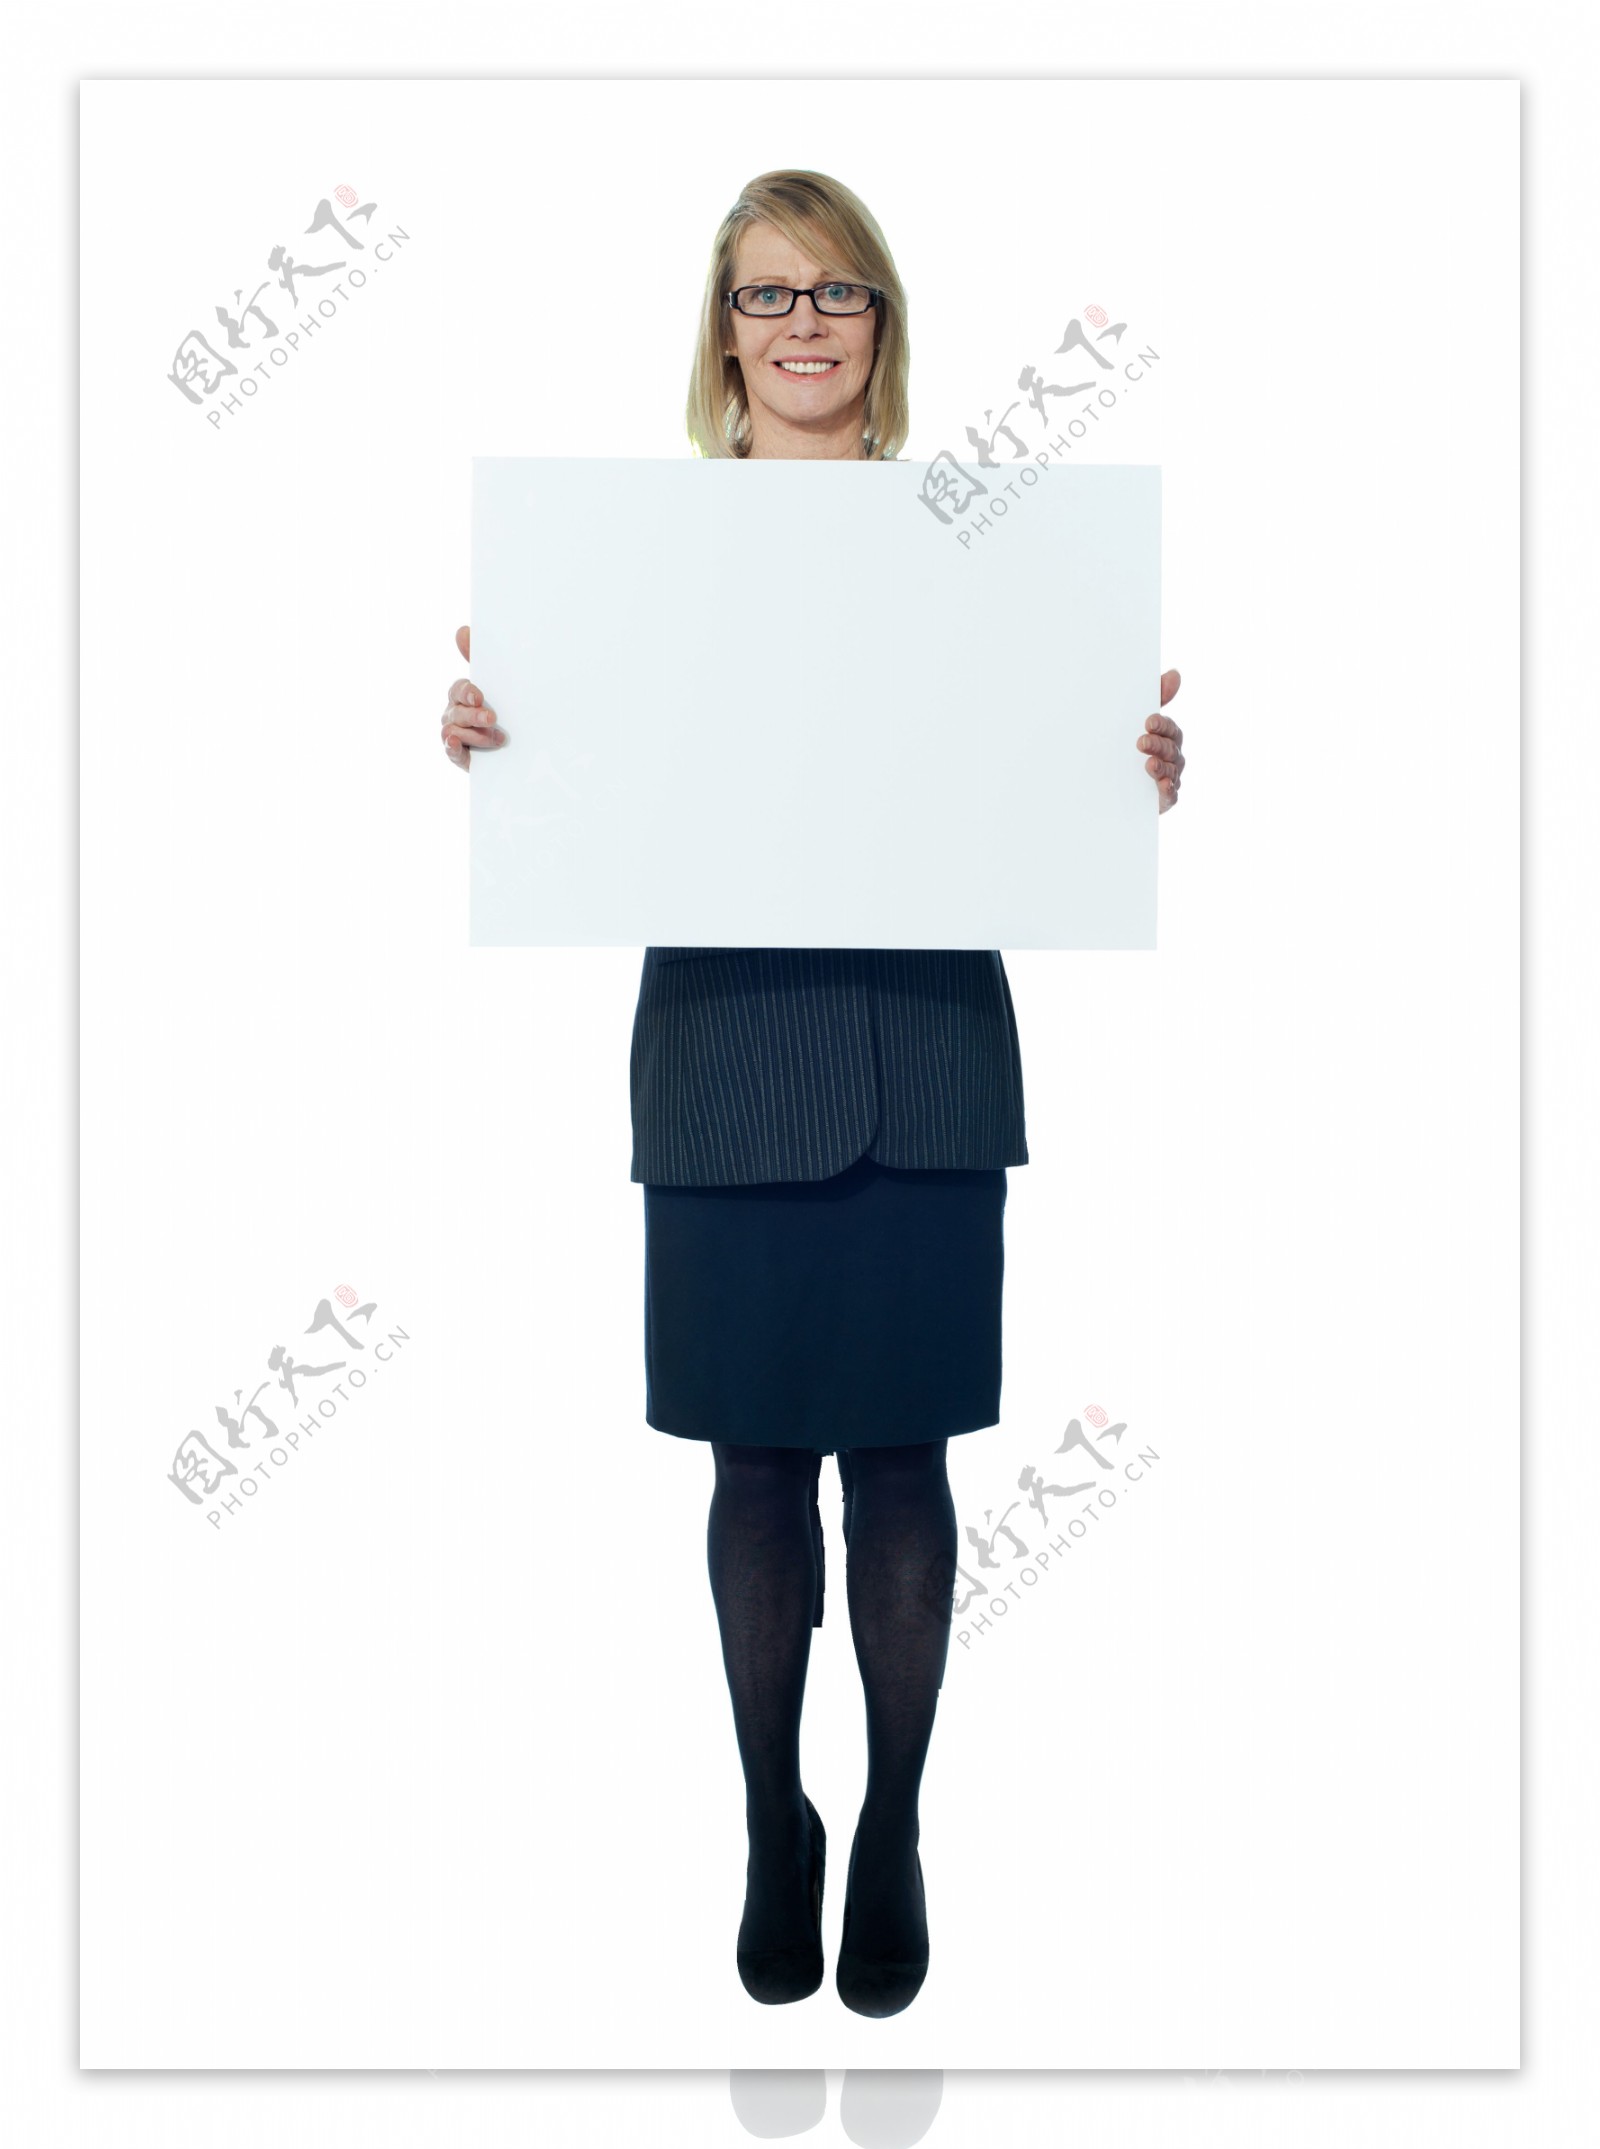 举白板的职业女性图片